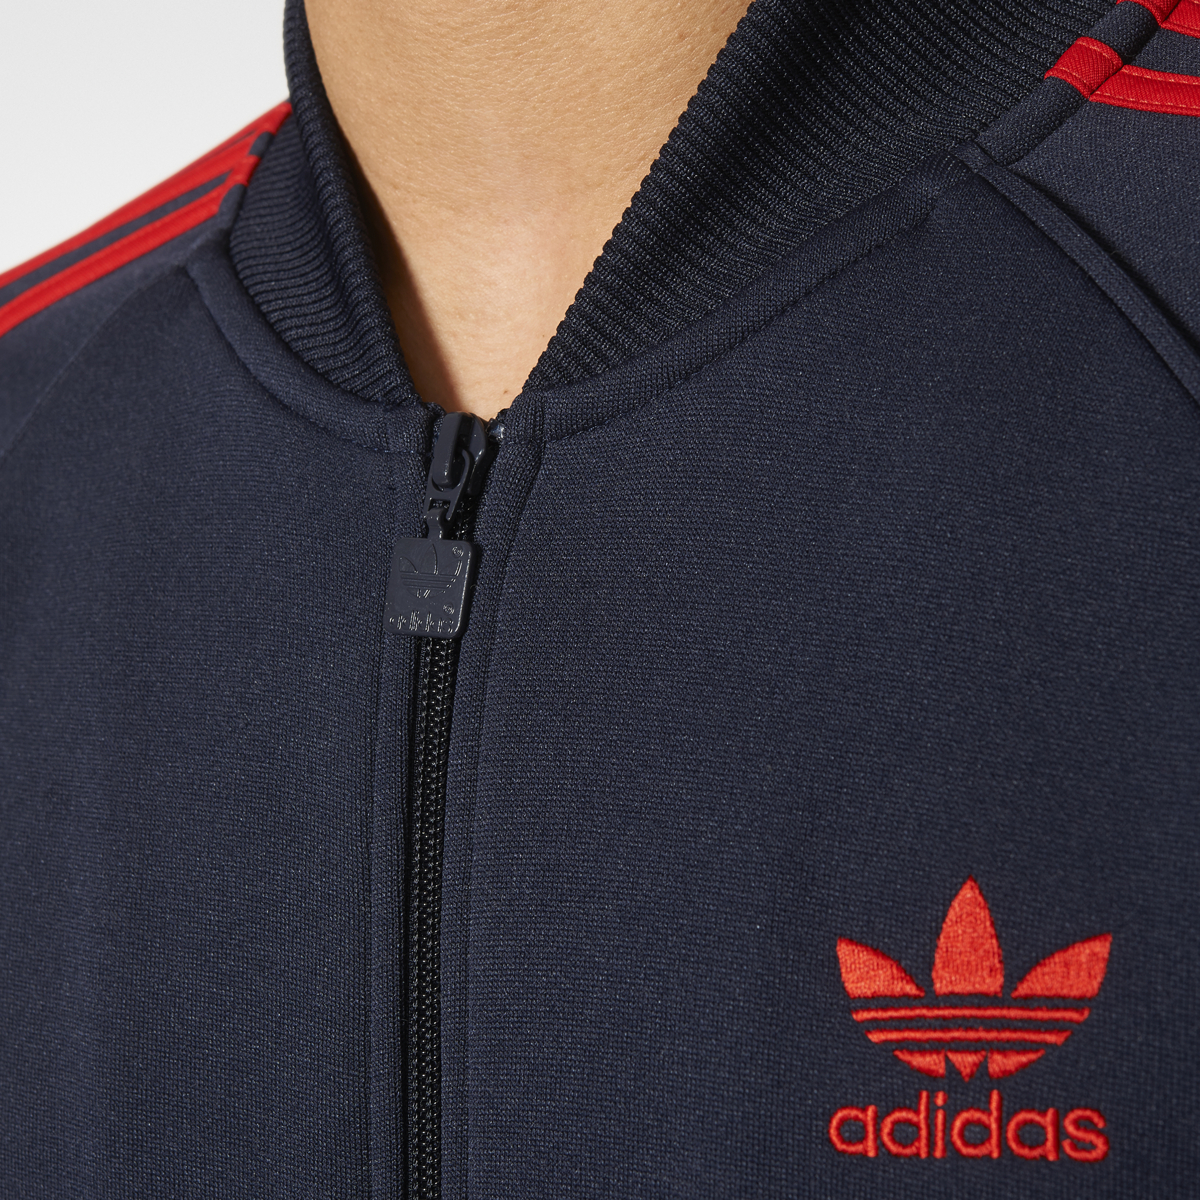 Adidas Originals Superstar Men's Track Jacket Legend Ink-Red br4320 | eBay